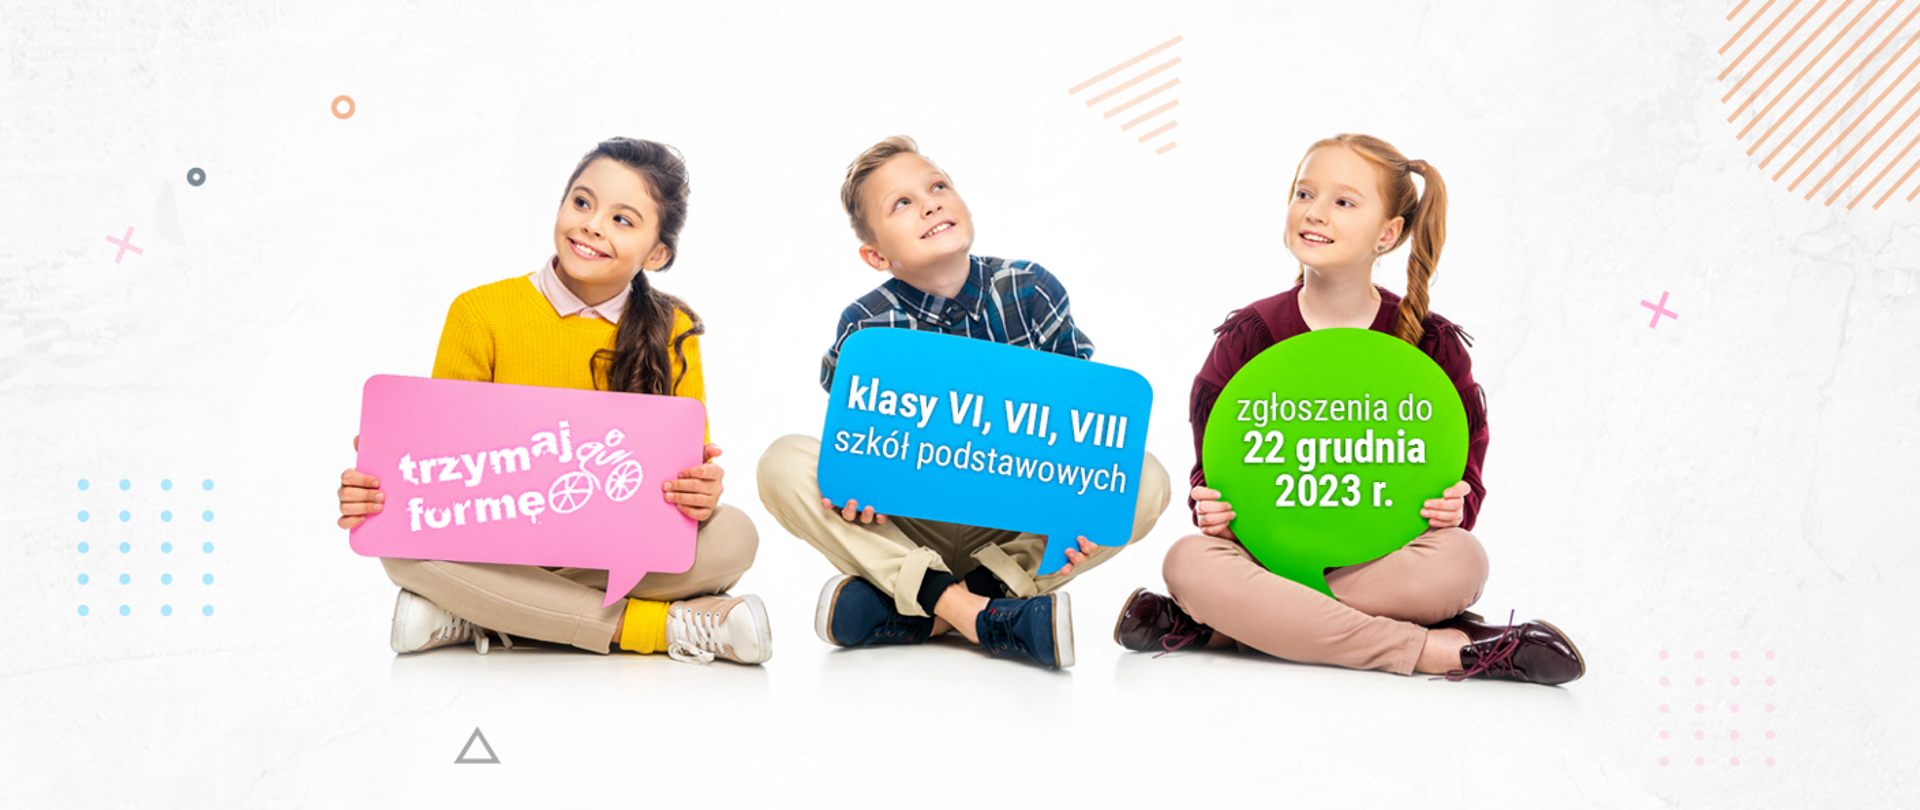 Grafika przedstawia trójkę dzieci w siadzie skrzyżnym. Każde z dzieci trzyma planszę z napisem: Trzymaj Formę!; Klasy VI, VII, VIII szkół podstawowych; zgłoszenia do 22 grudnia 2023 r. 